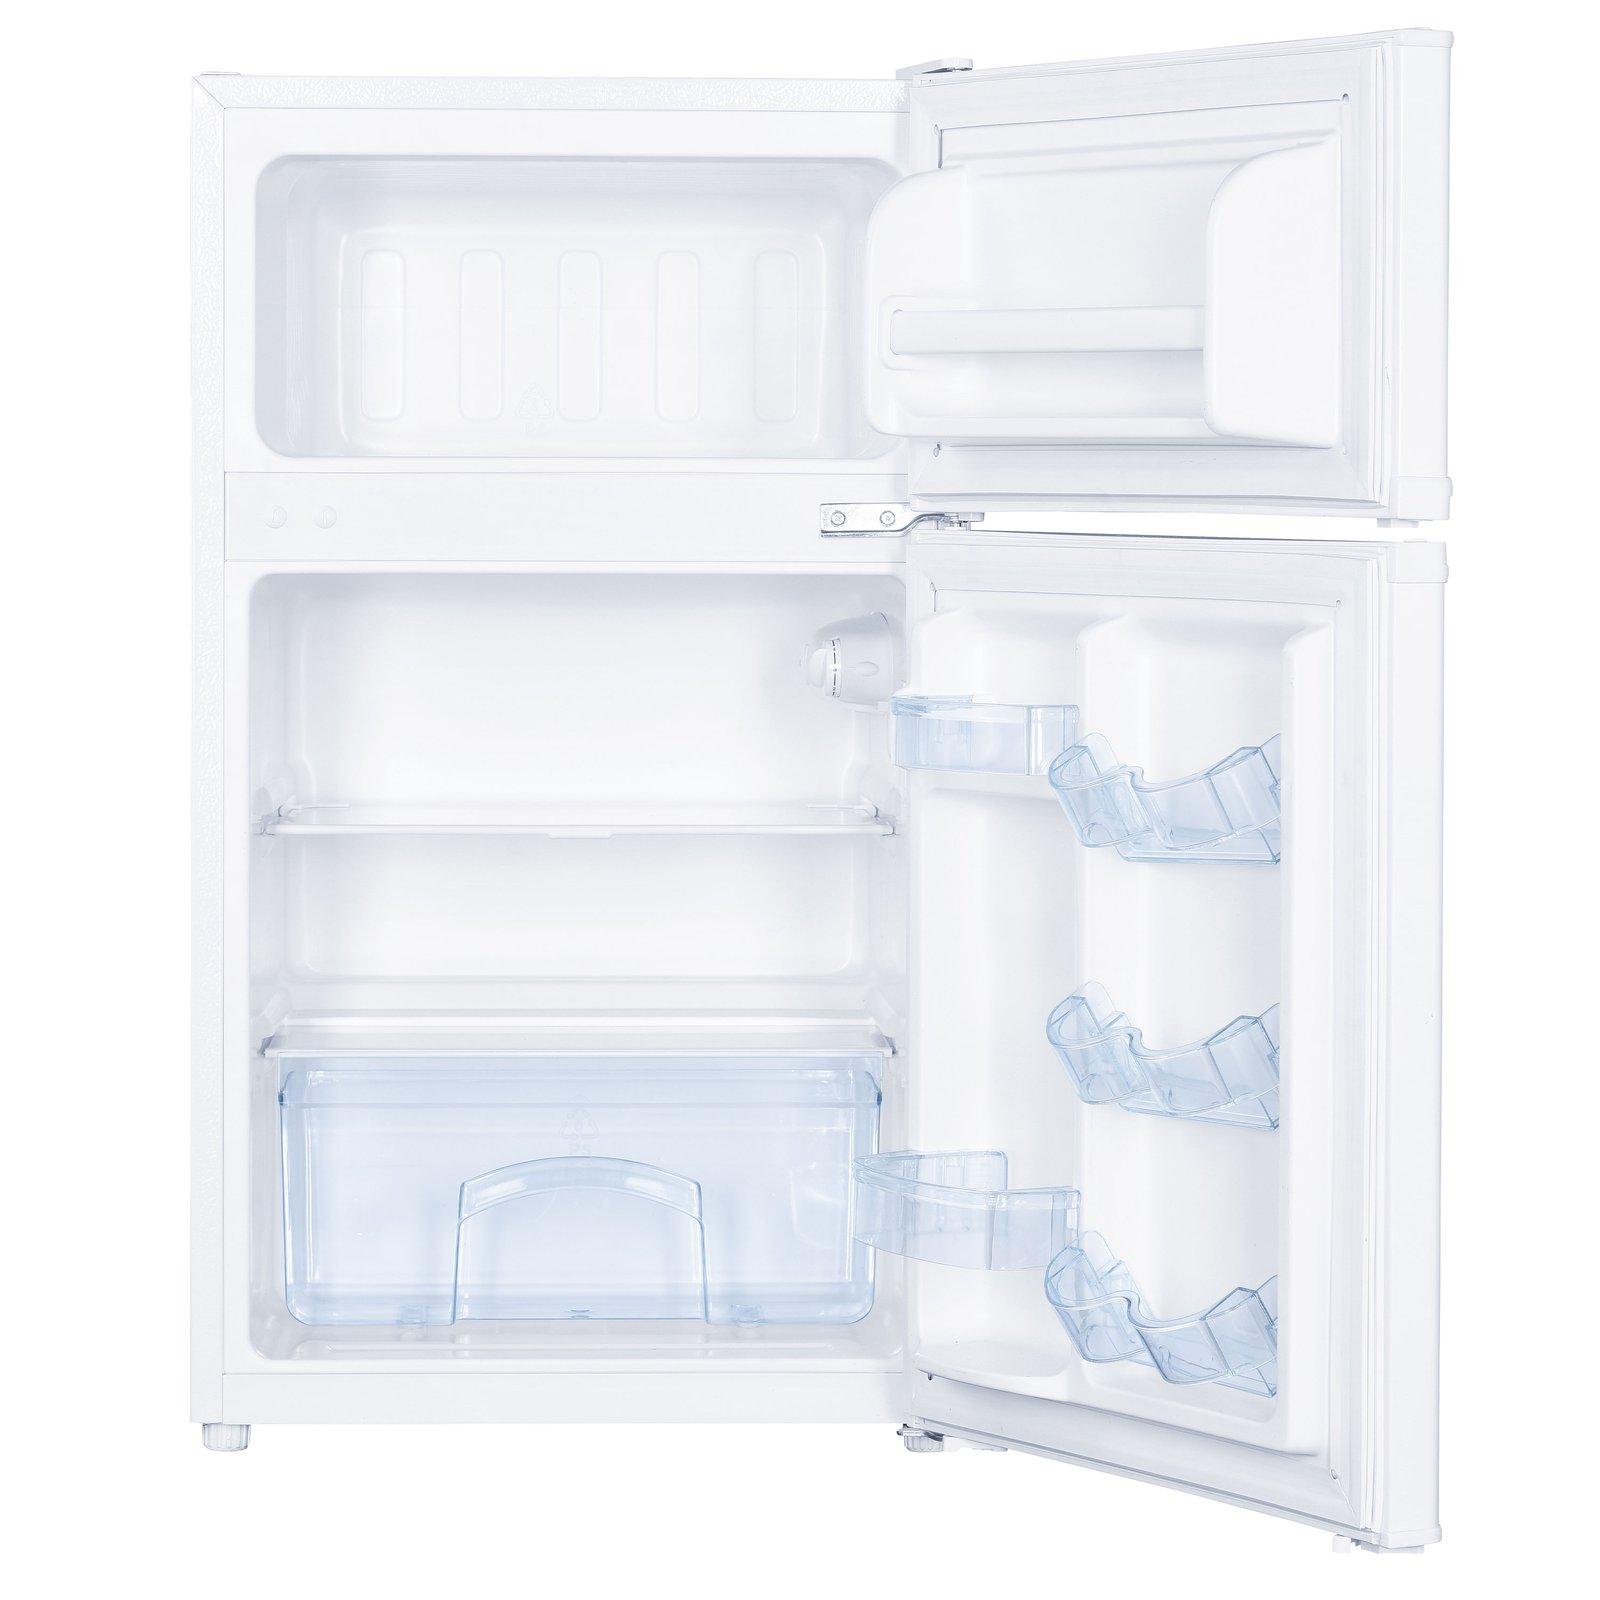 Avanti 3.1 cu. ft. Compact Refrigerator - White / 3.1 cu. ft.